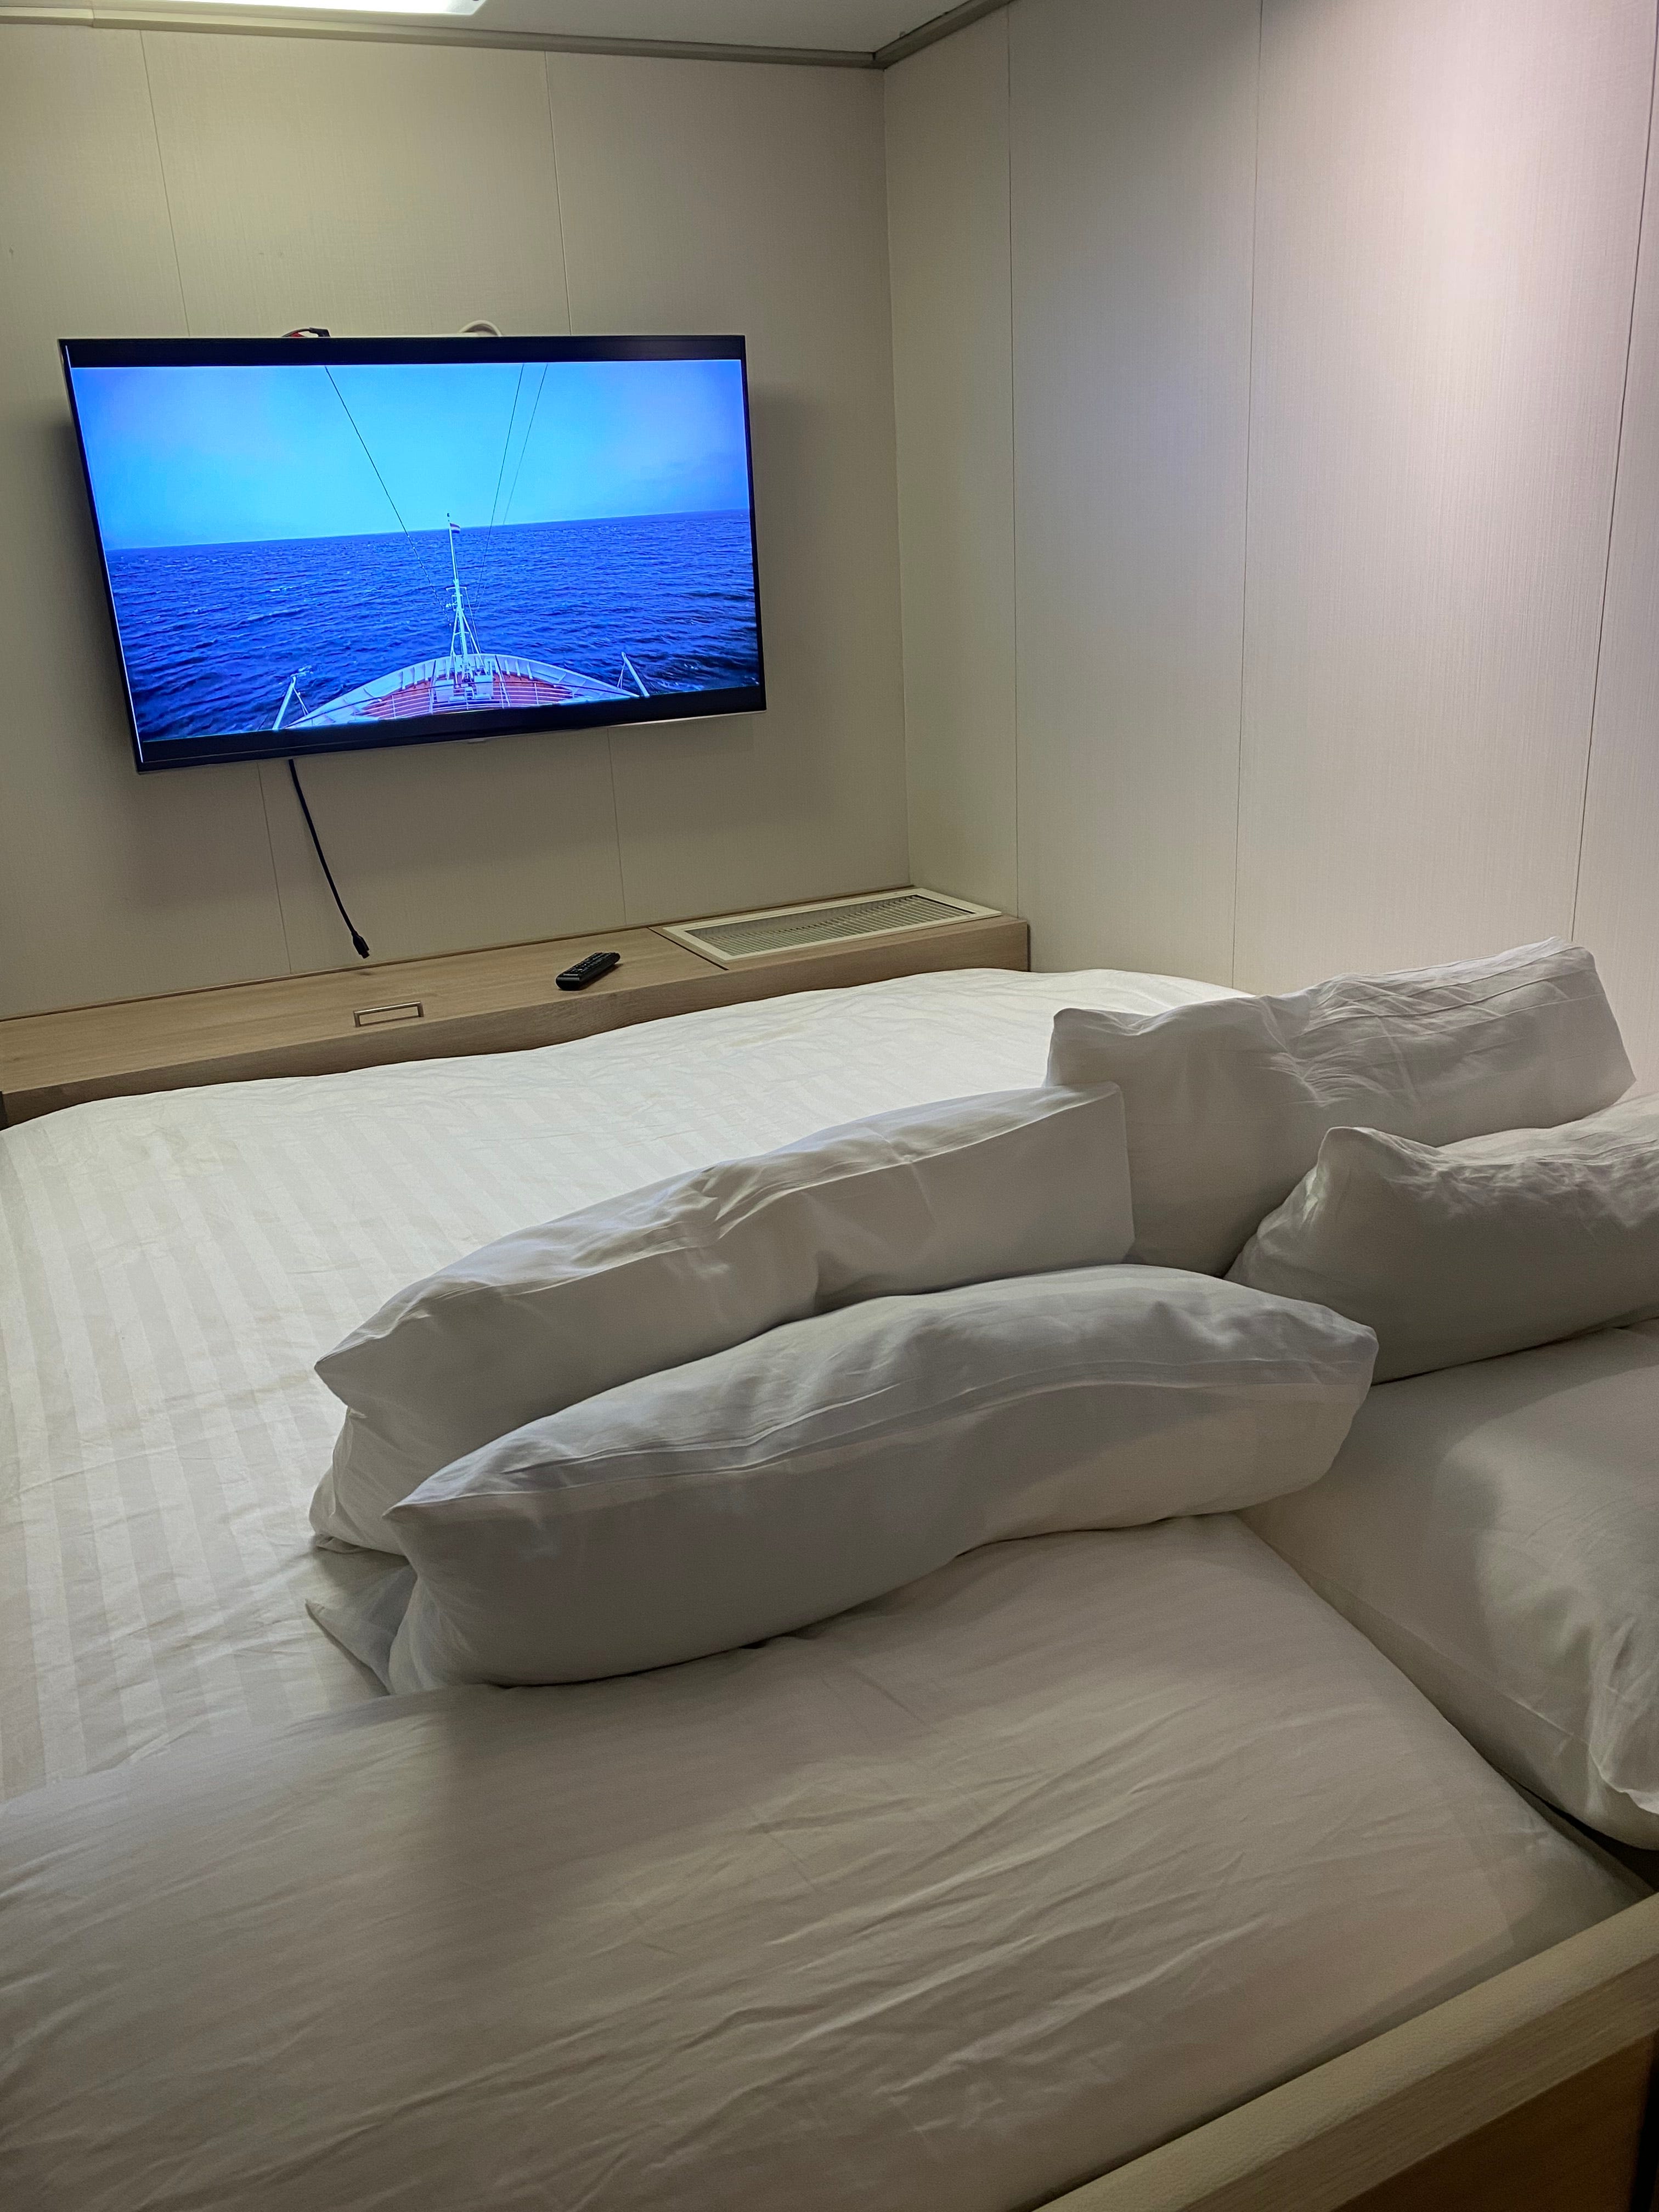 Bett mit Blick auf den Fernseher an der Wand